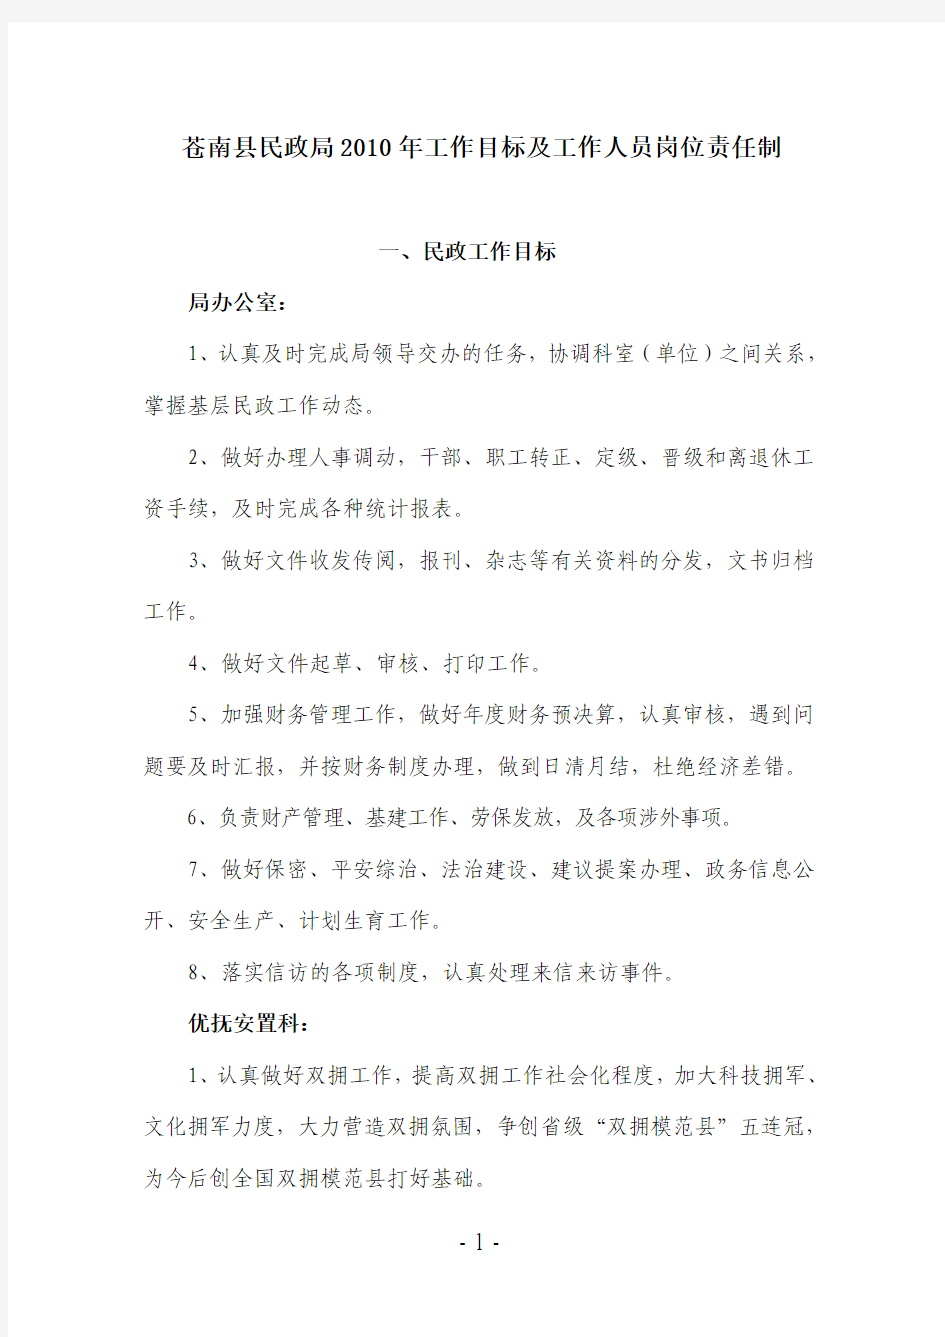 苍南县民政局2010年工作目标及工作人员岗位责任制